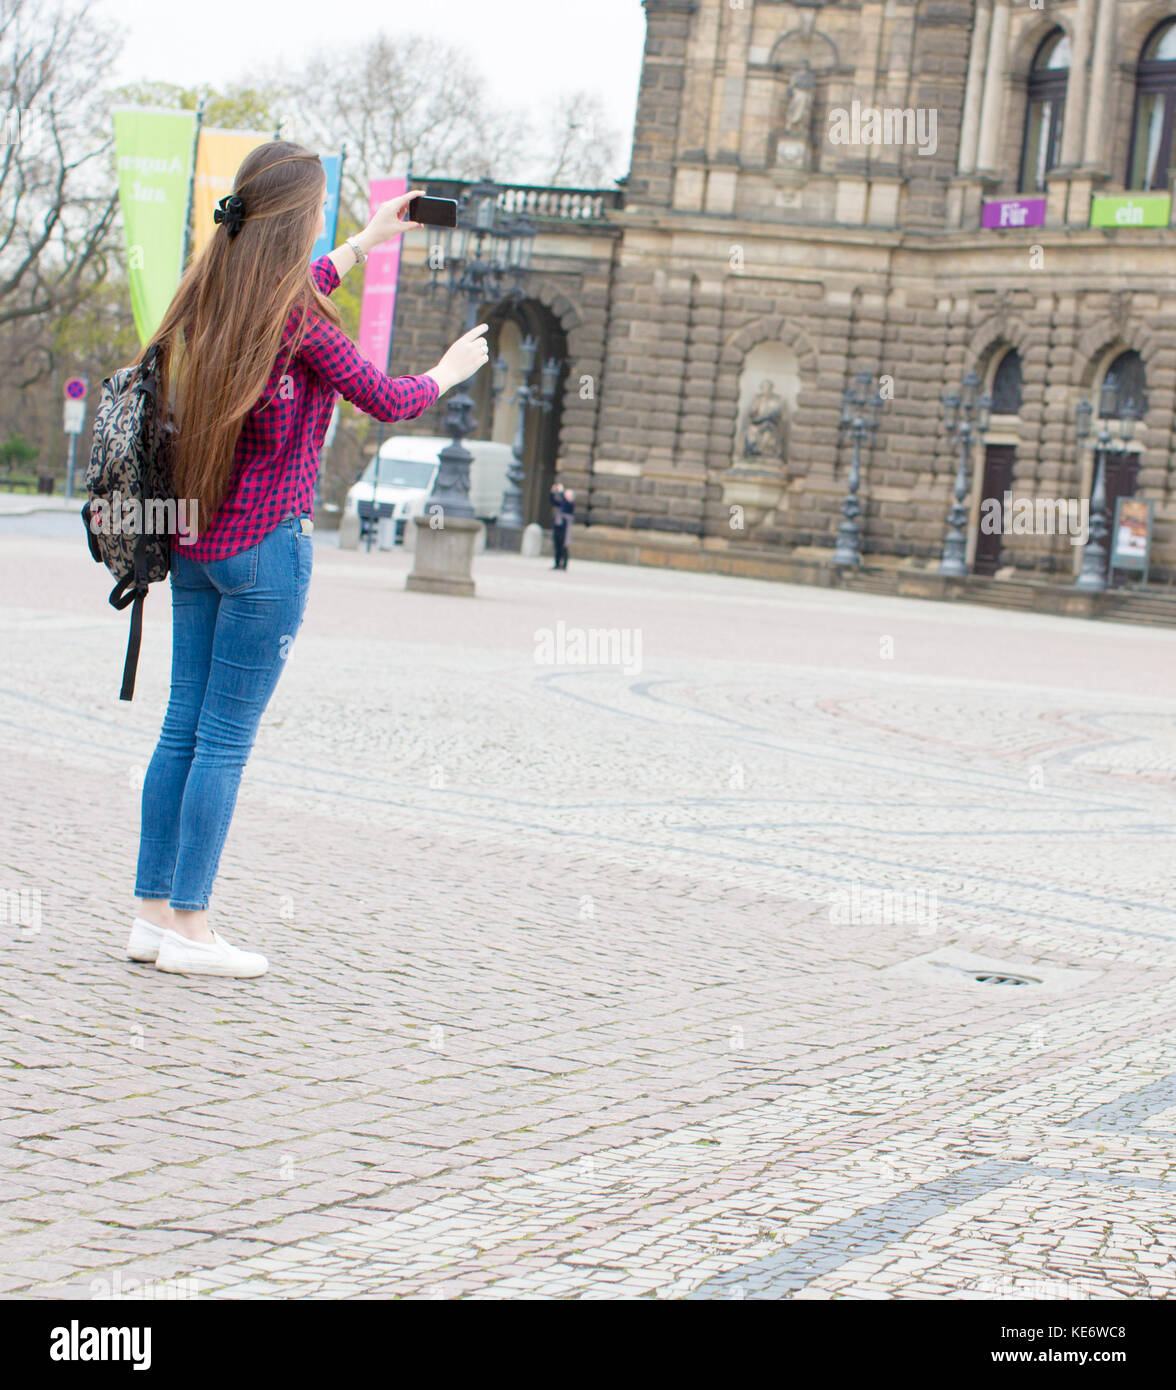 Giovane donna con capelli lunghi utilizza lo smartphone in unione città vecchia Foto Stock